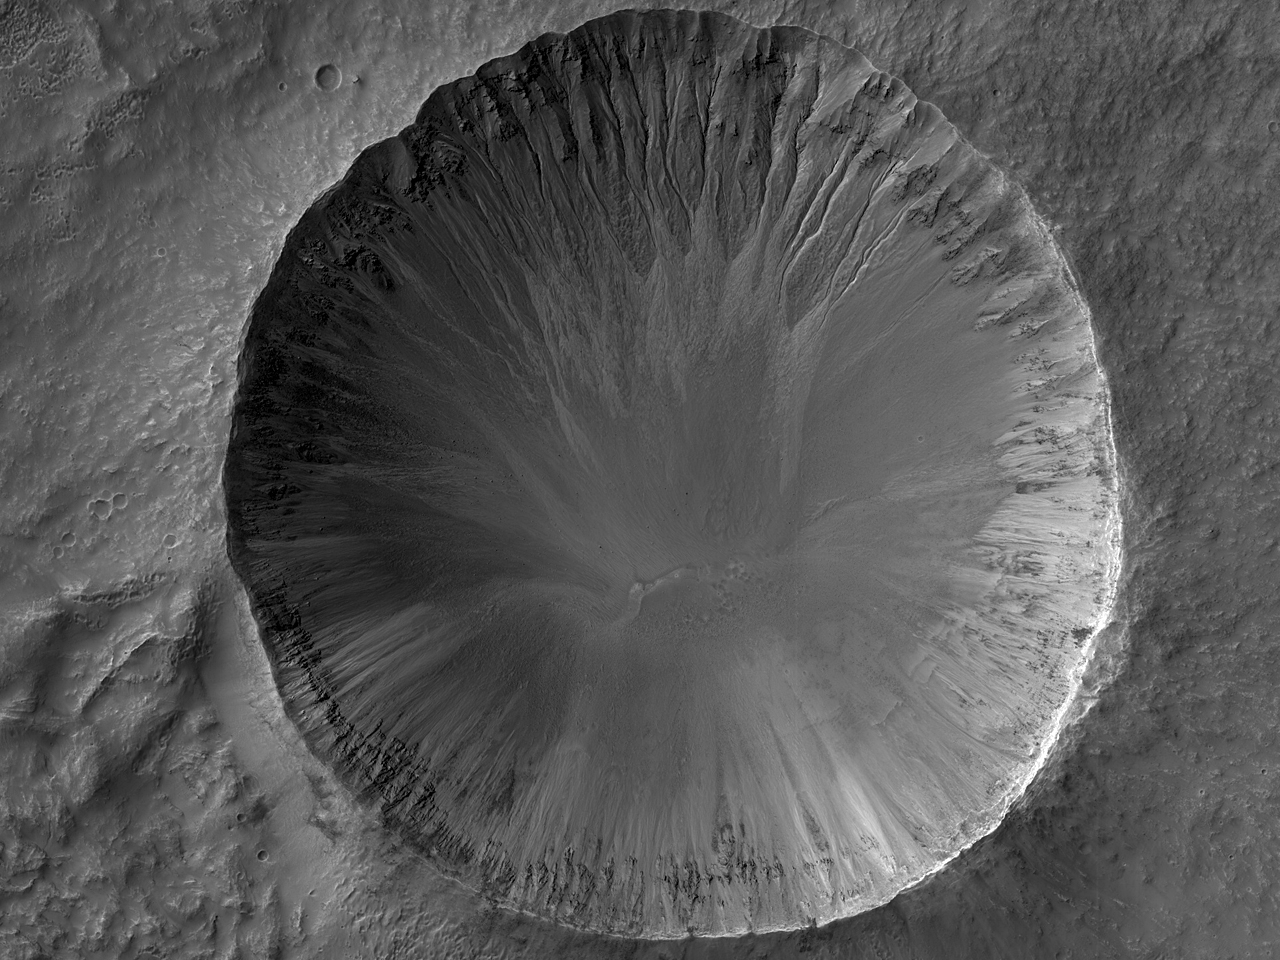 Parvus fossisque distinctus crater